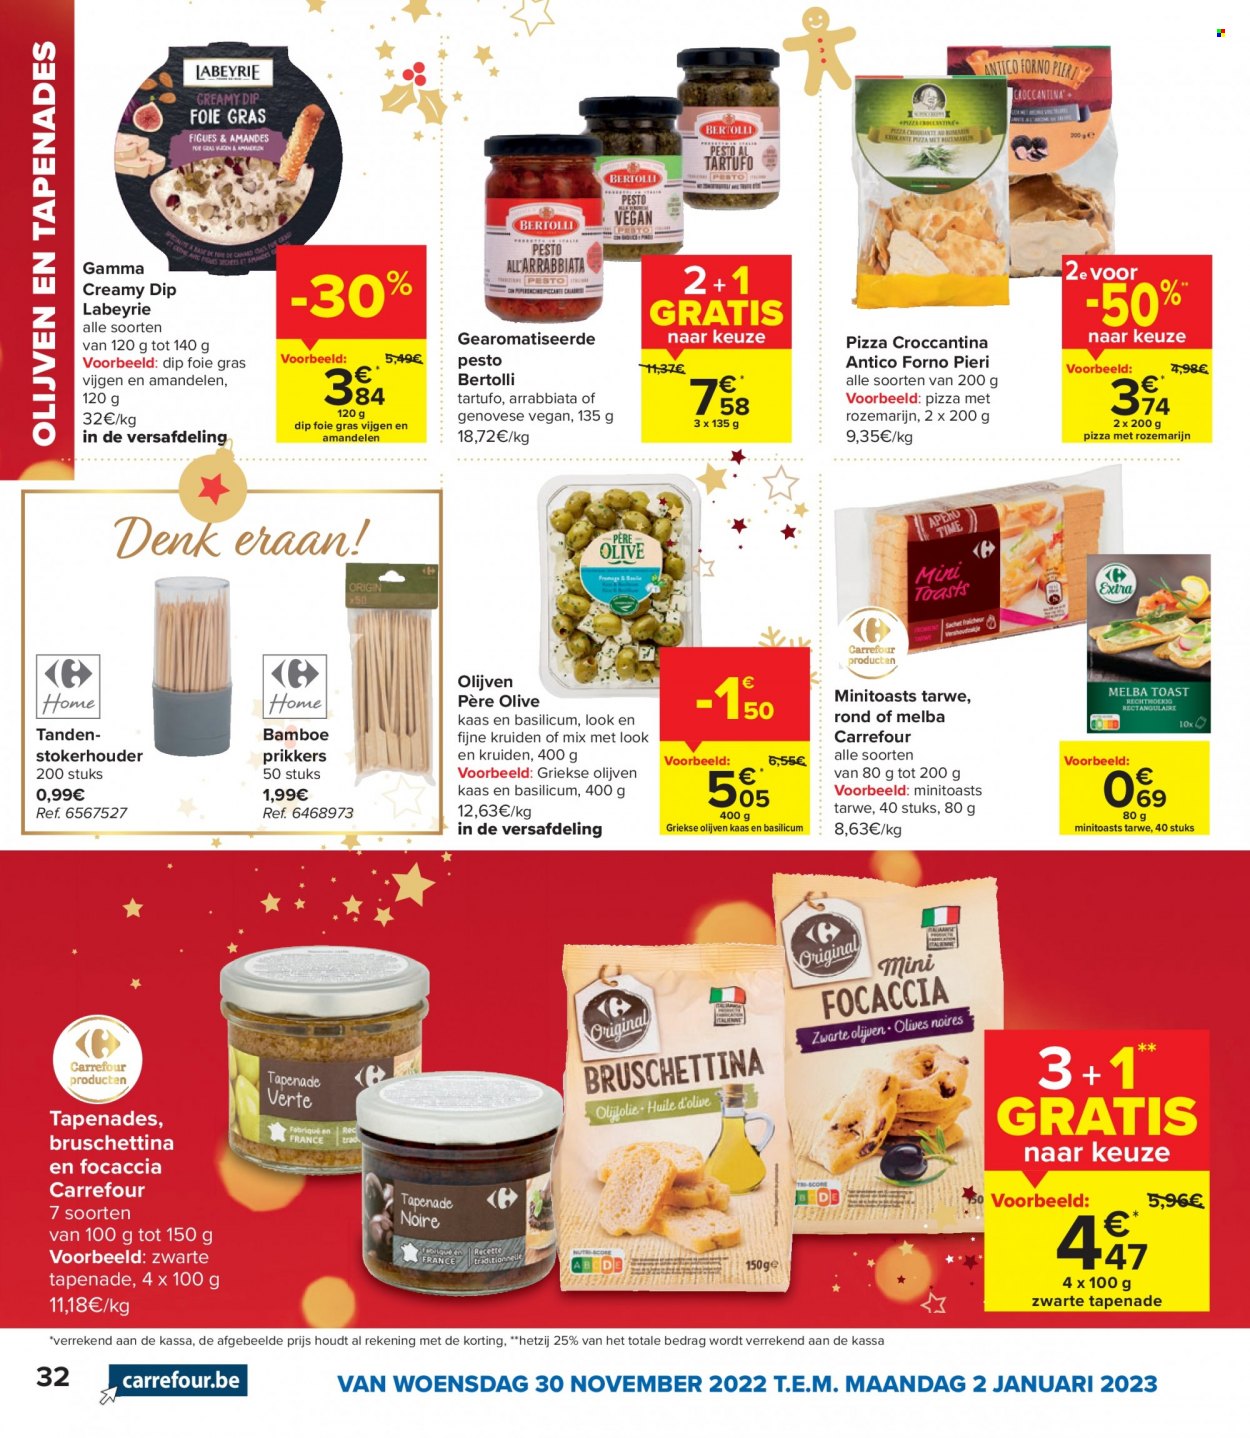 thumbnail - Carrefour-aanbieding - 30/11/2022 - 02/01/2023 -  producten in de aanbieding - truffel, Gamma, focaccia, vijgen, Bertolli, pizza, foie gras, kaas, olijven, amandelen. Pagina 32.